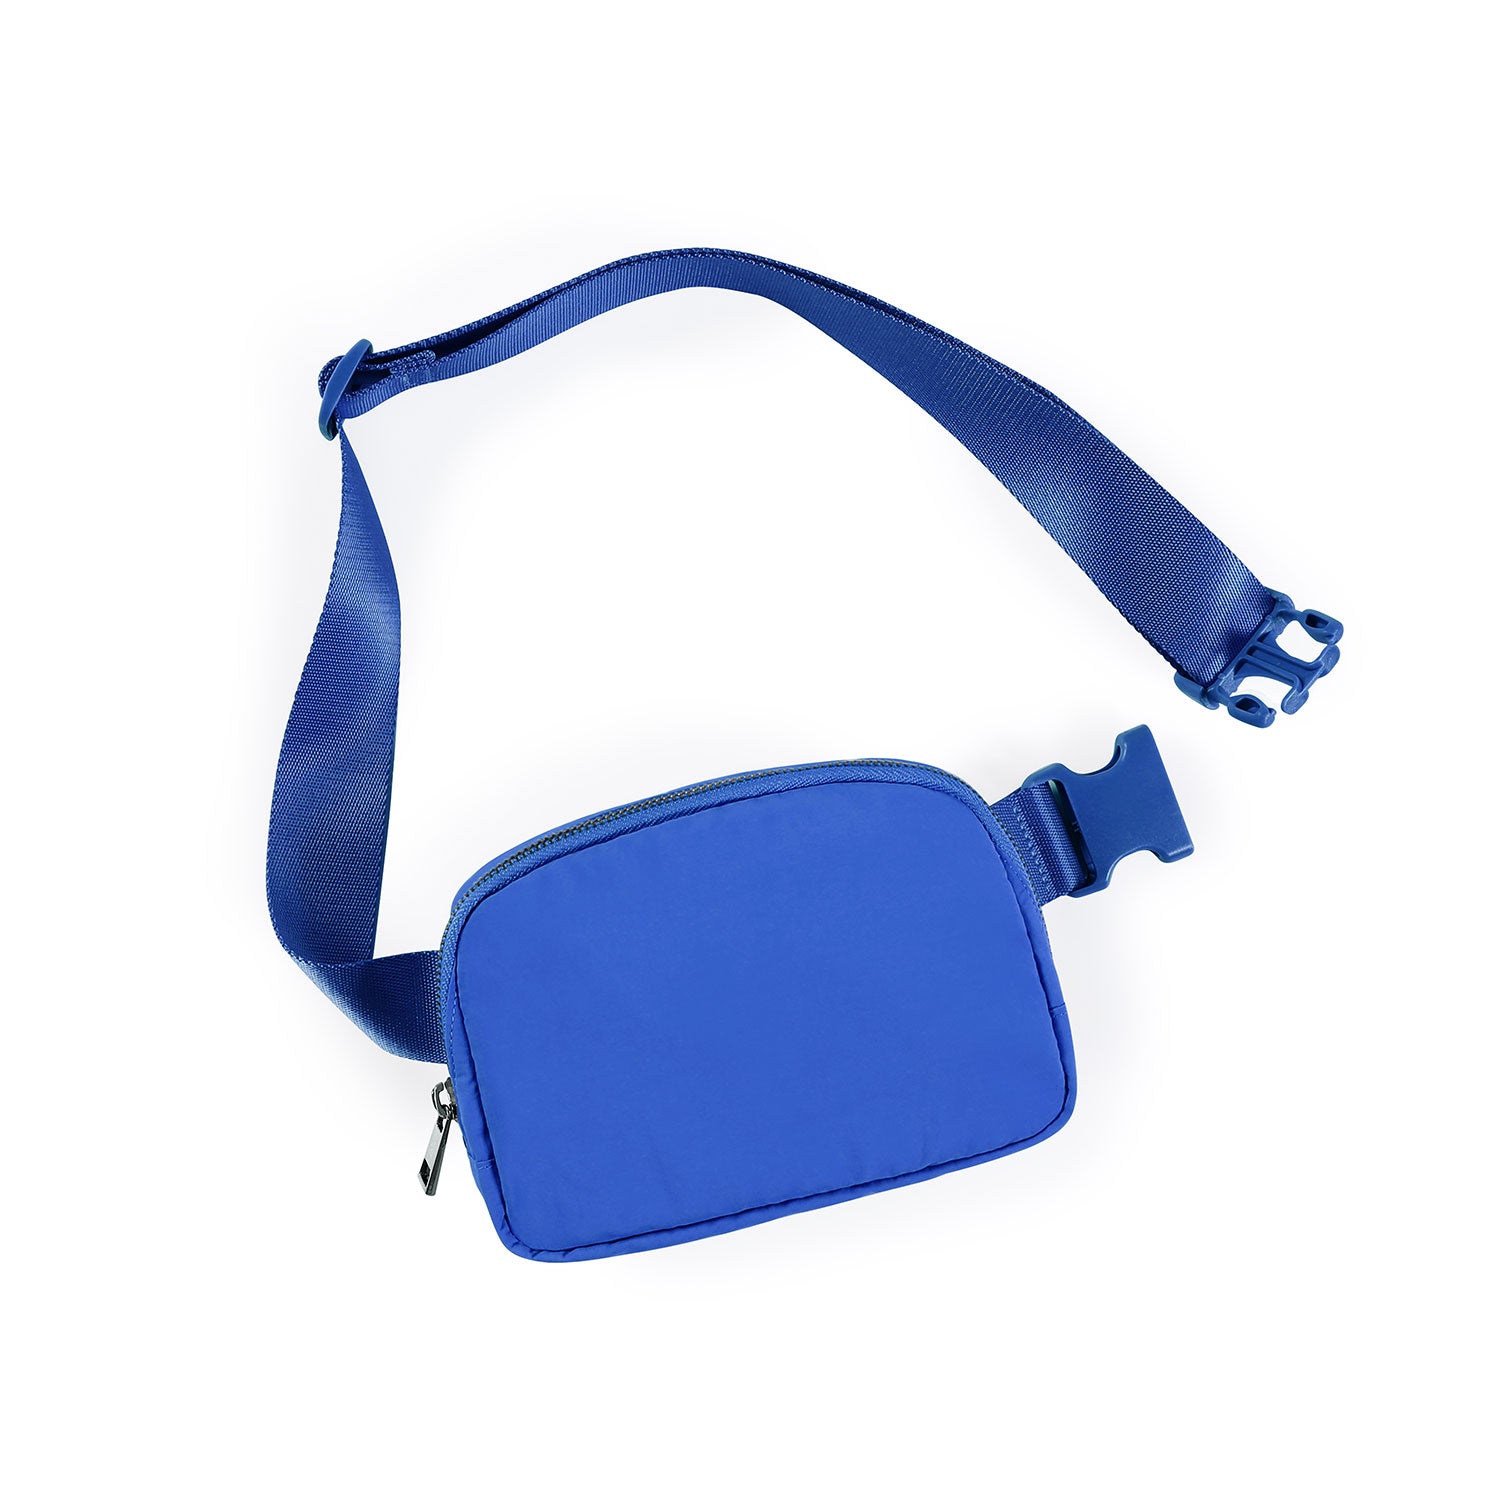 Unisex Mini Belt Bag Wild Blue 8" x 2" x 5.5" - ododos